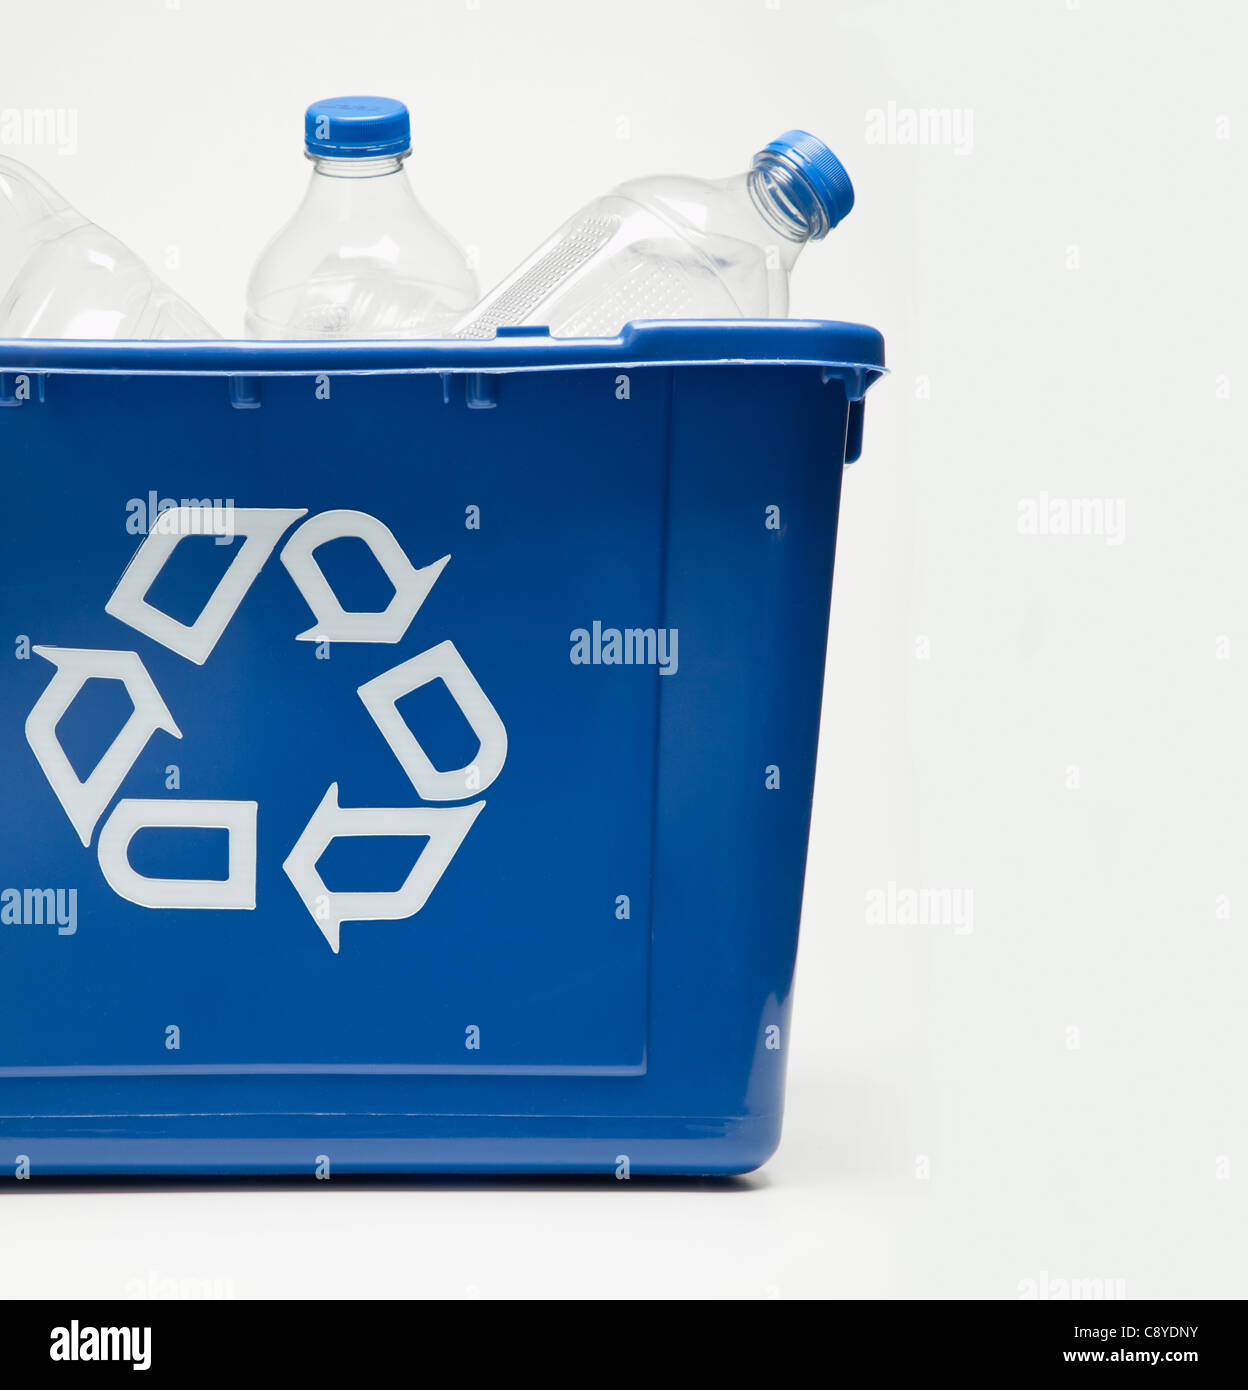 Bac de recyclage avec des bouteilles en plastique, studio shot Banque D'Images